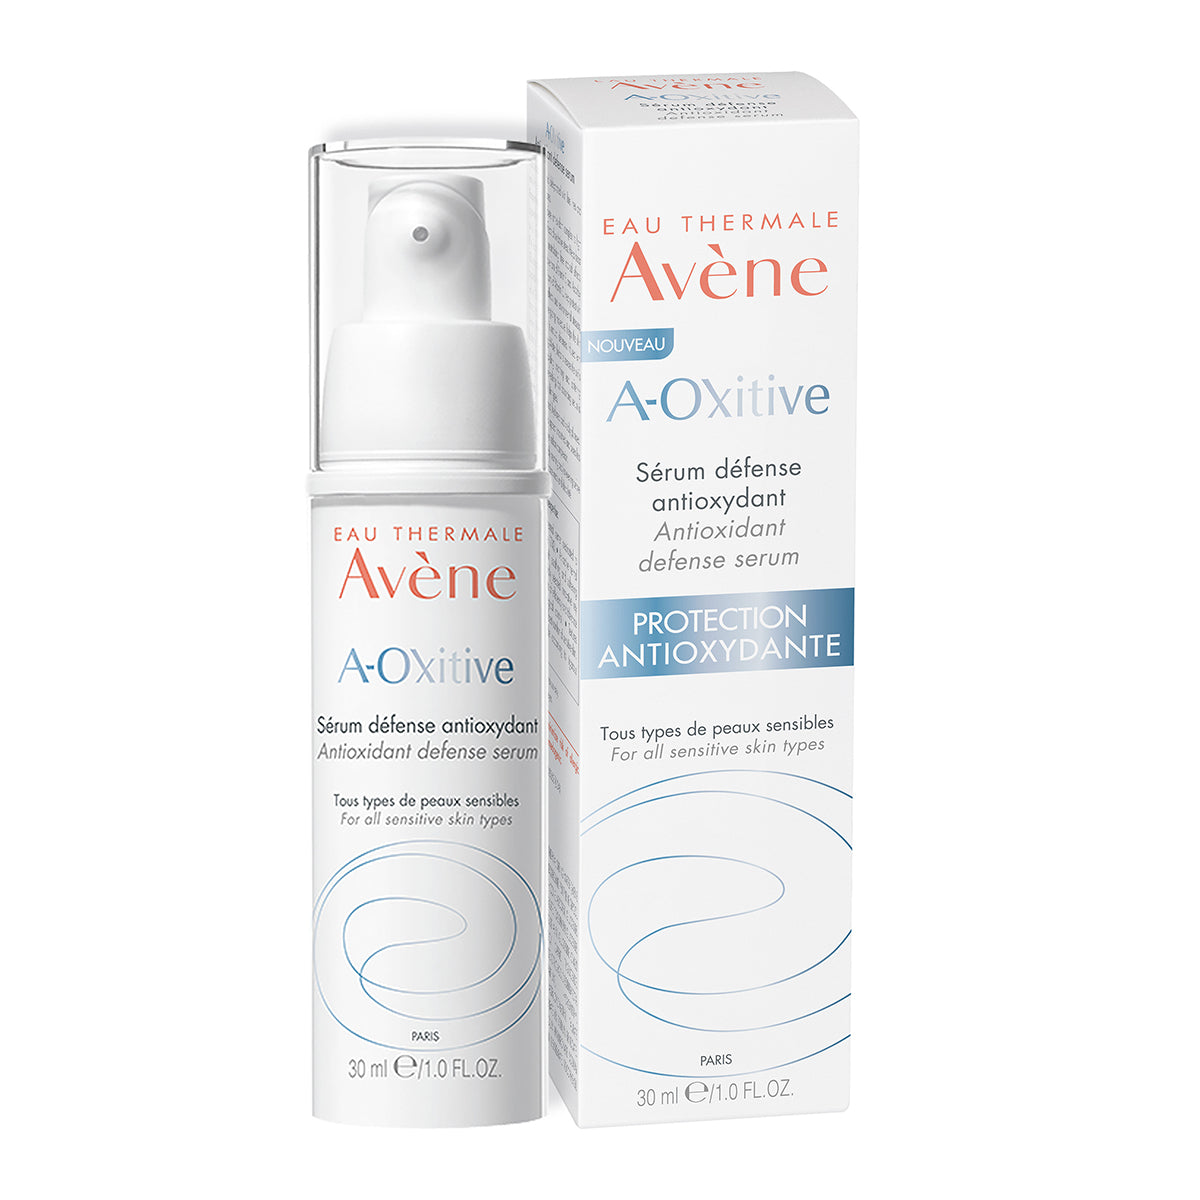 Avene A-Oxitive suero, defiende y protege la piel del estrés